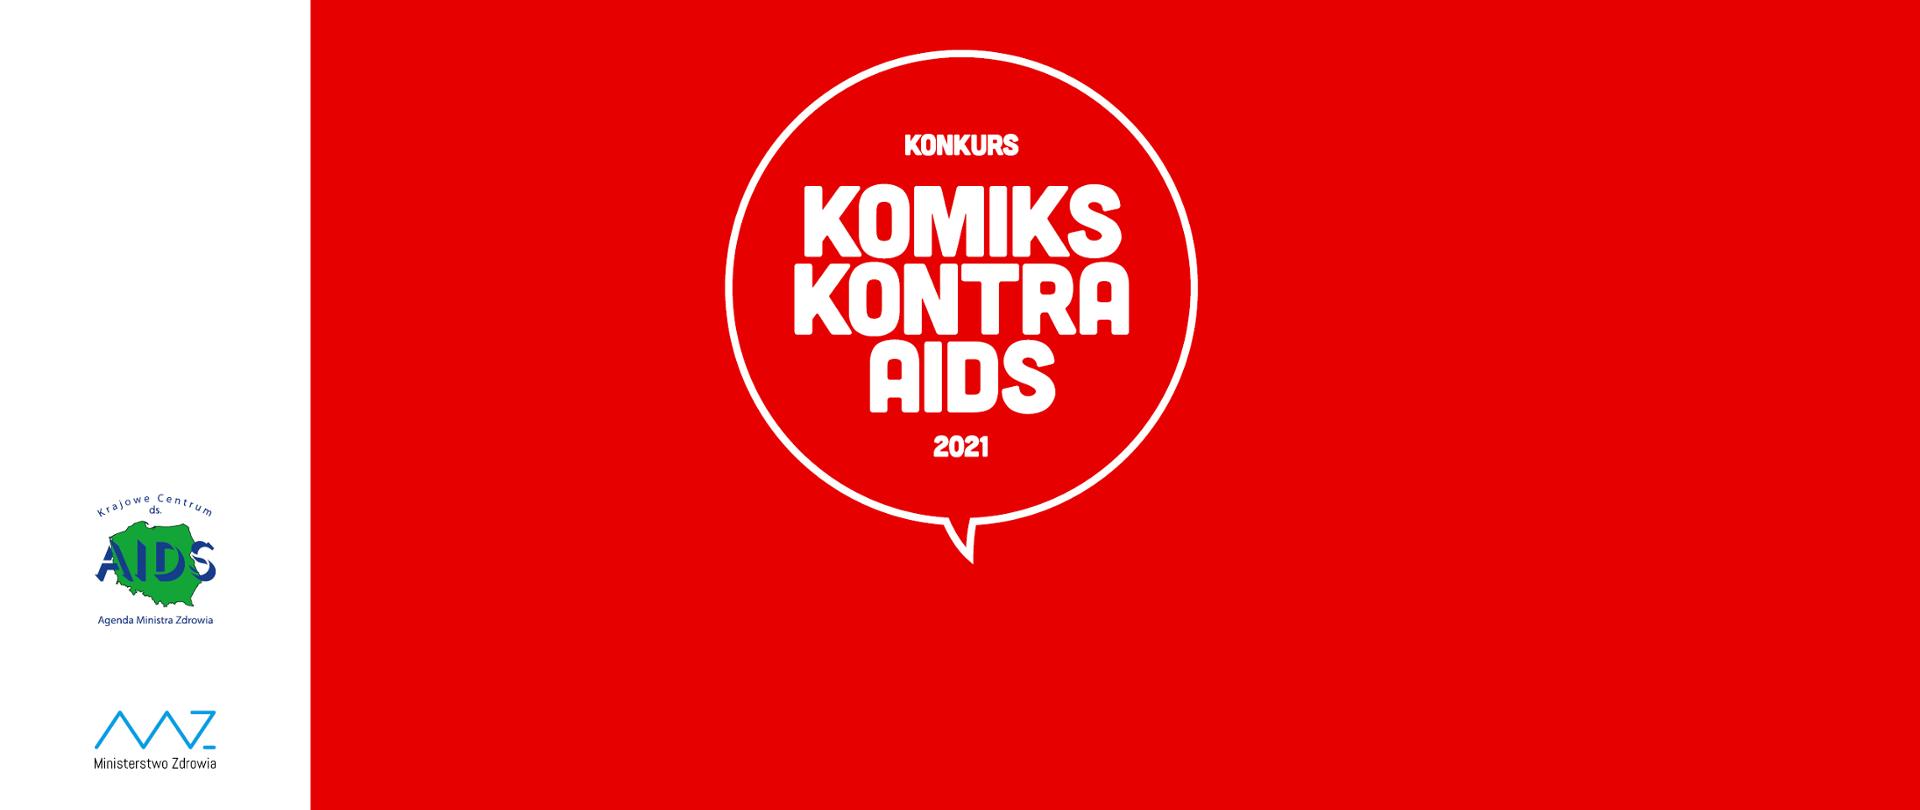 Plakat z napisem "Komiks kontra AIDS"